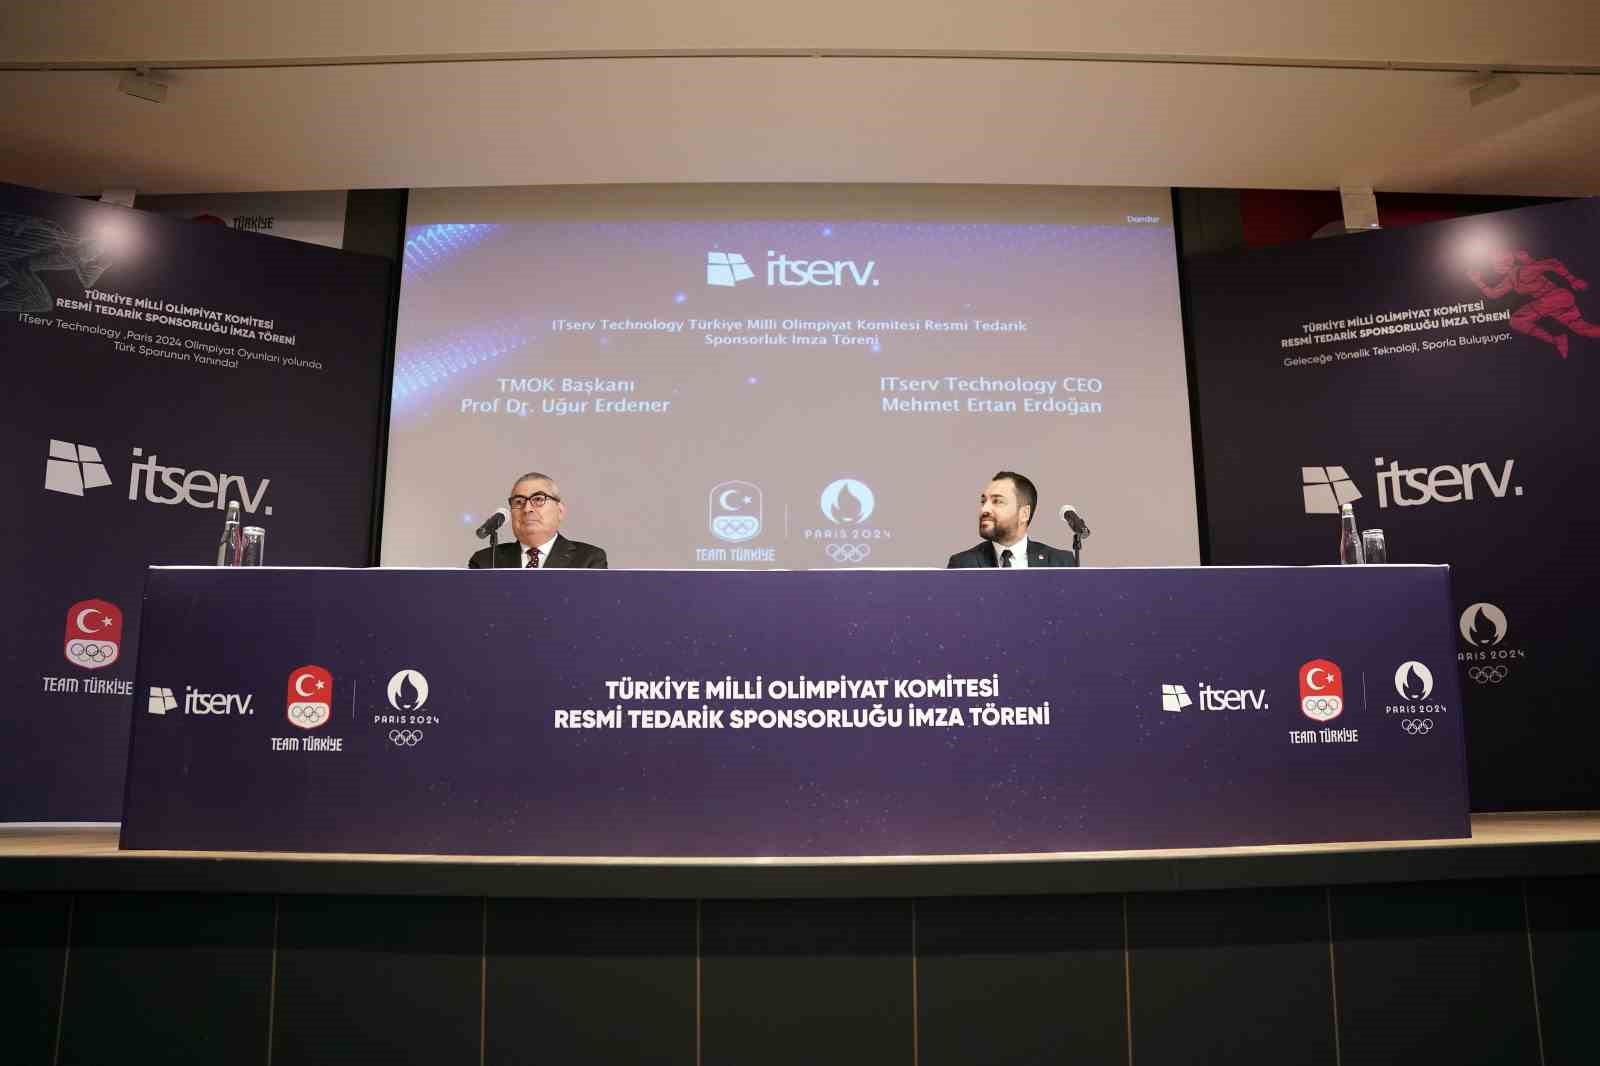 Türkiye Milli Olimpiyat Komitesi’ne yeni sponsor
